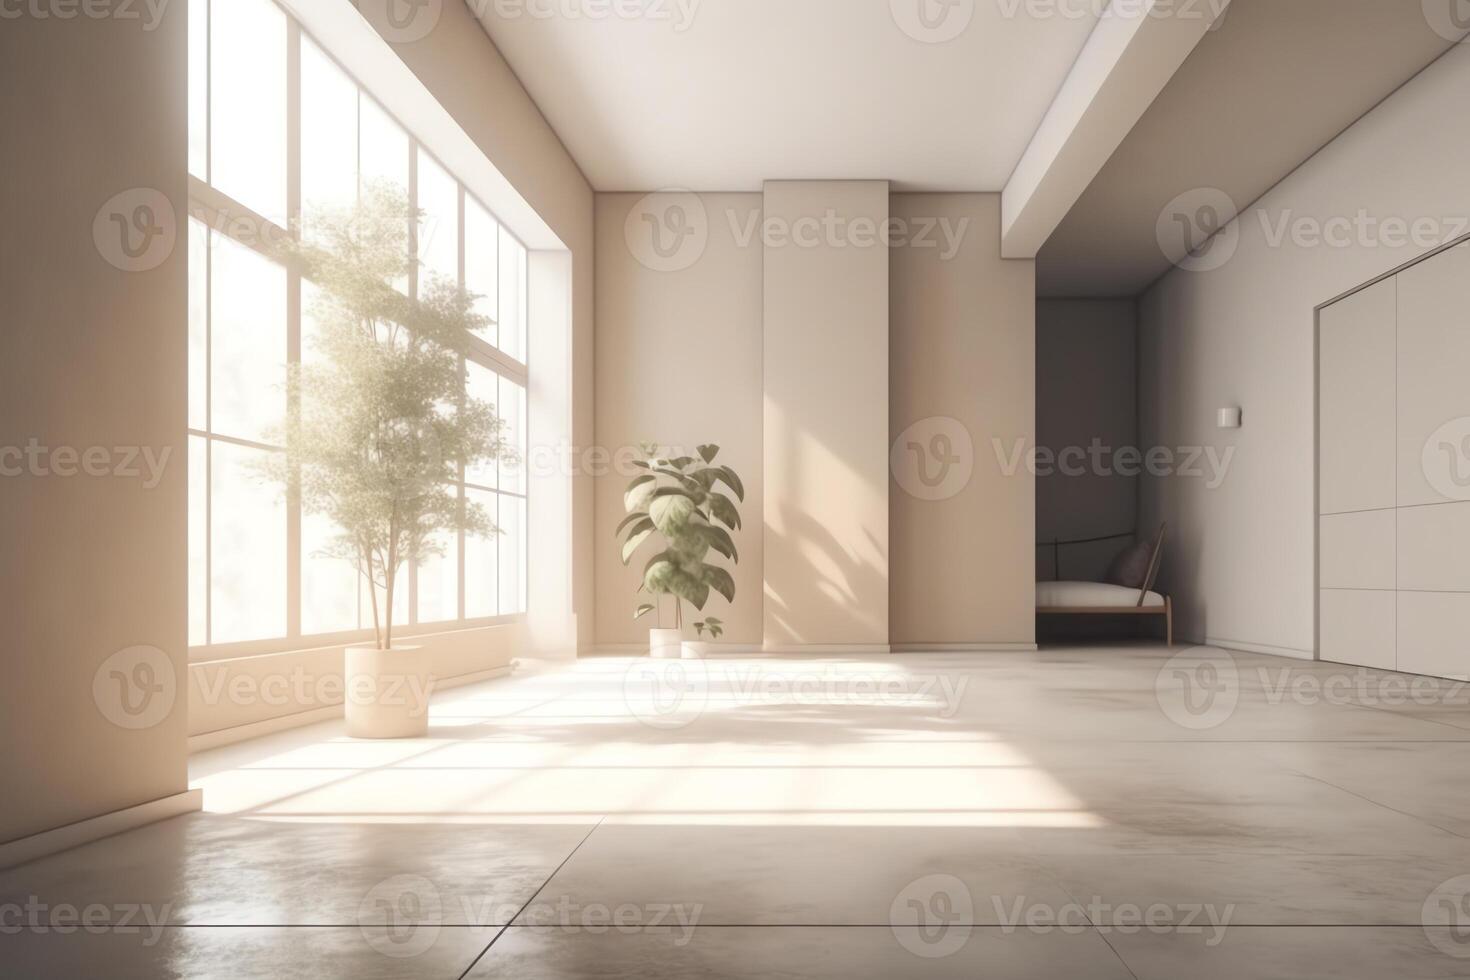 minimalistische leeg kamer met beige en wit achtergronden beton verdieping zon straal knus huis binnen- fabriek Oppervlakte kantoor en leven kamers bespotten omhoog 3d weergave. ai gegenereerd foto